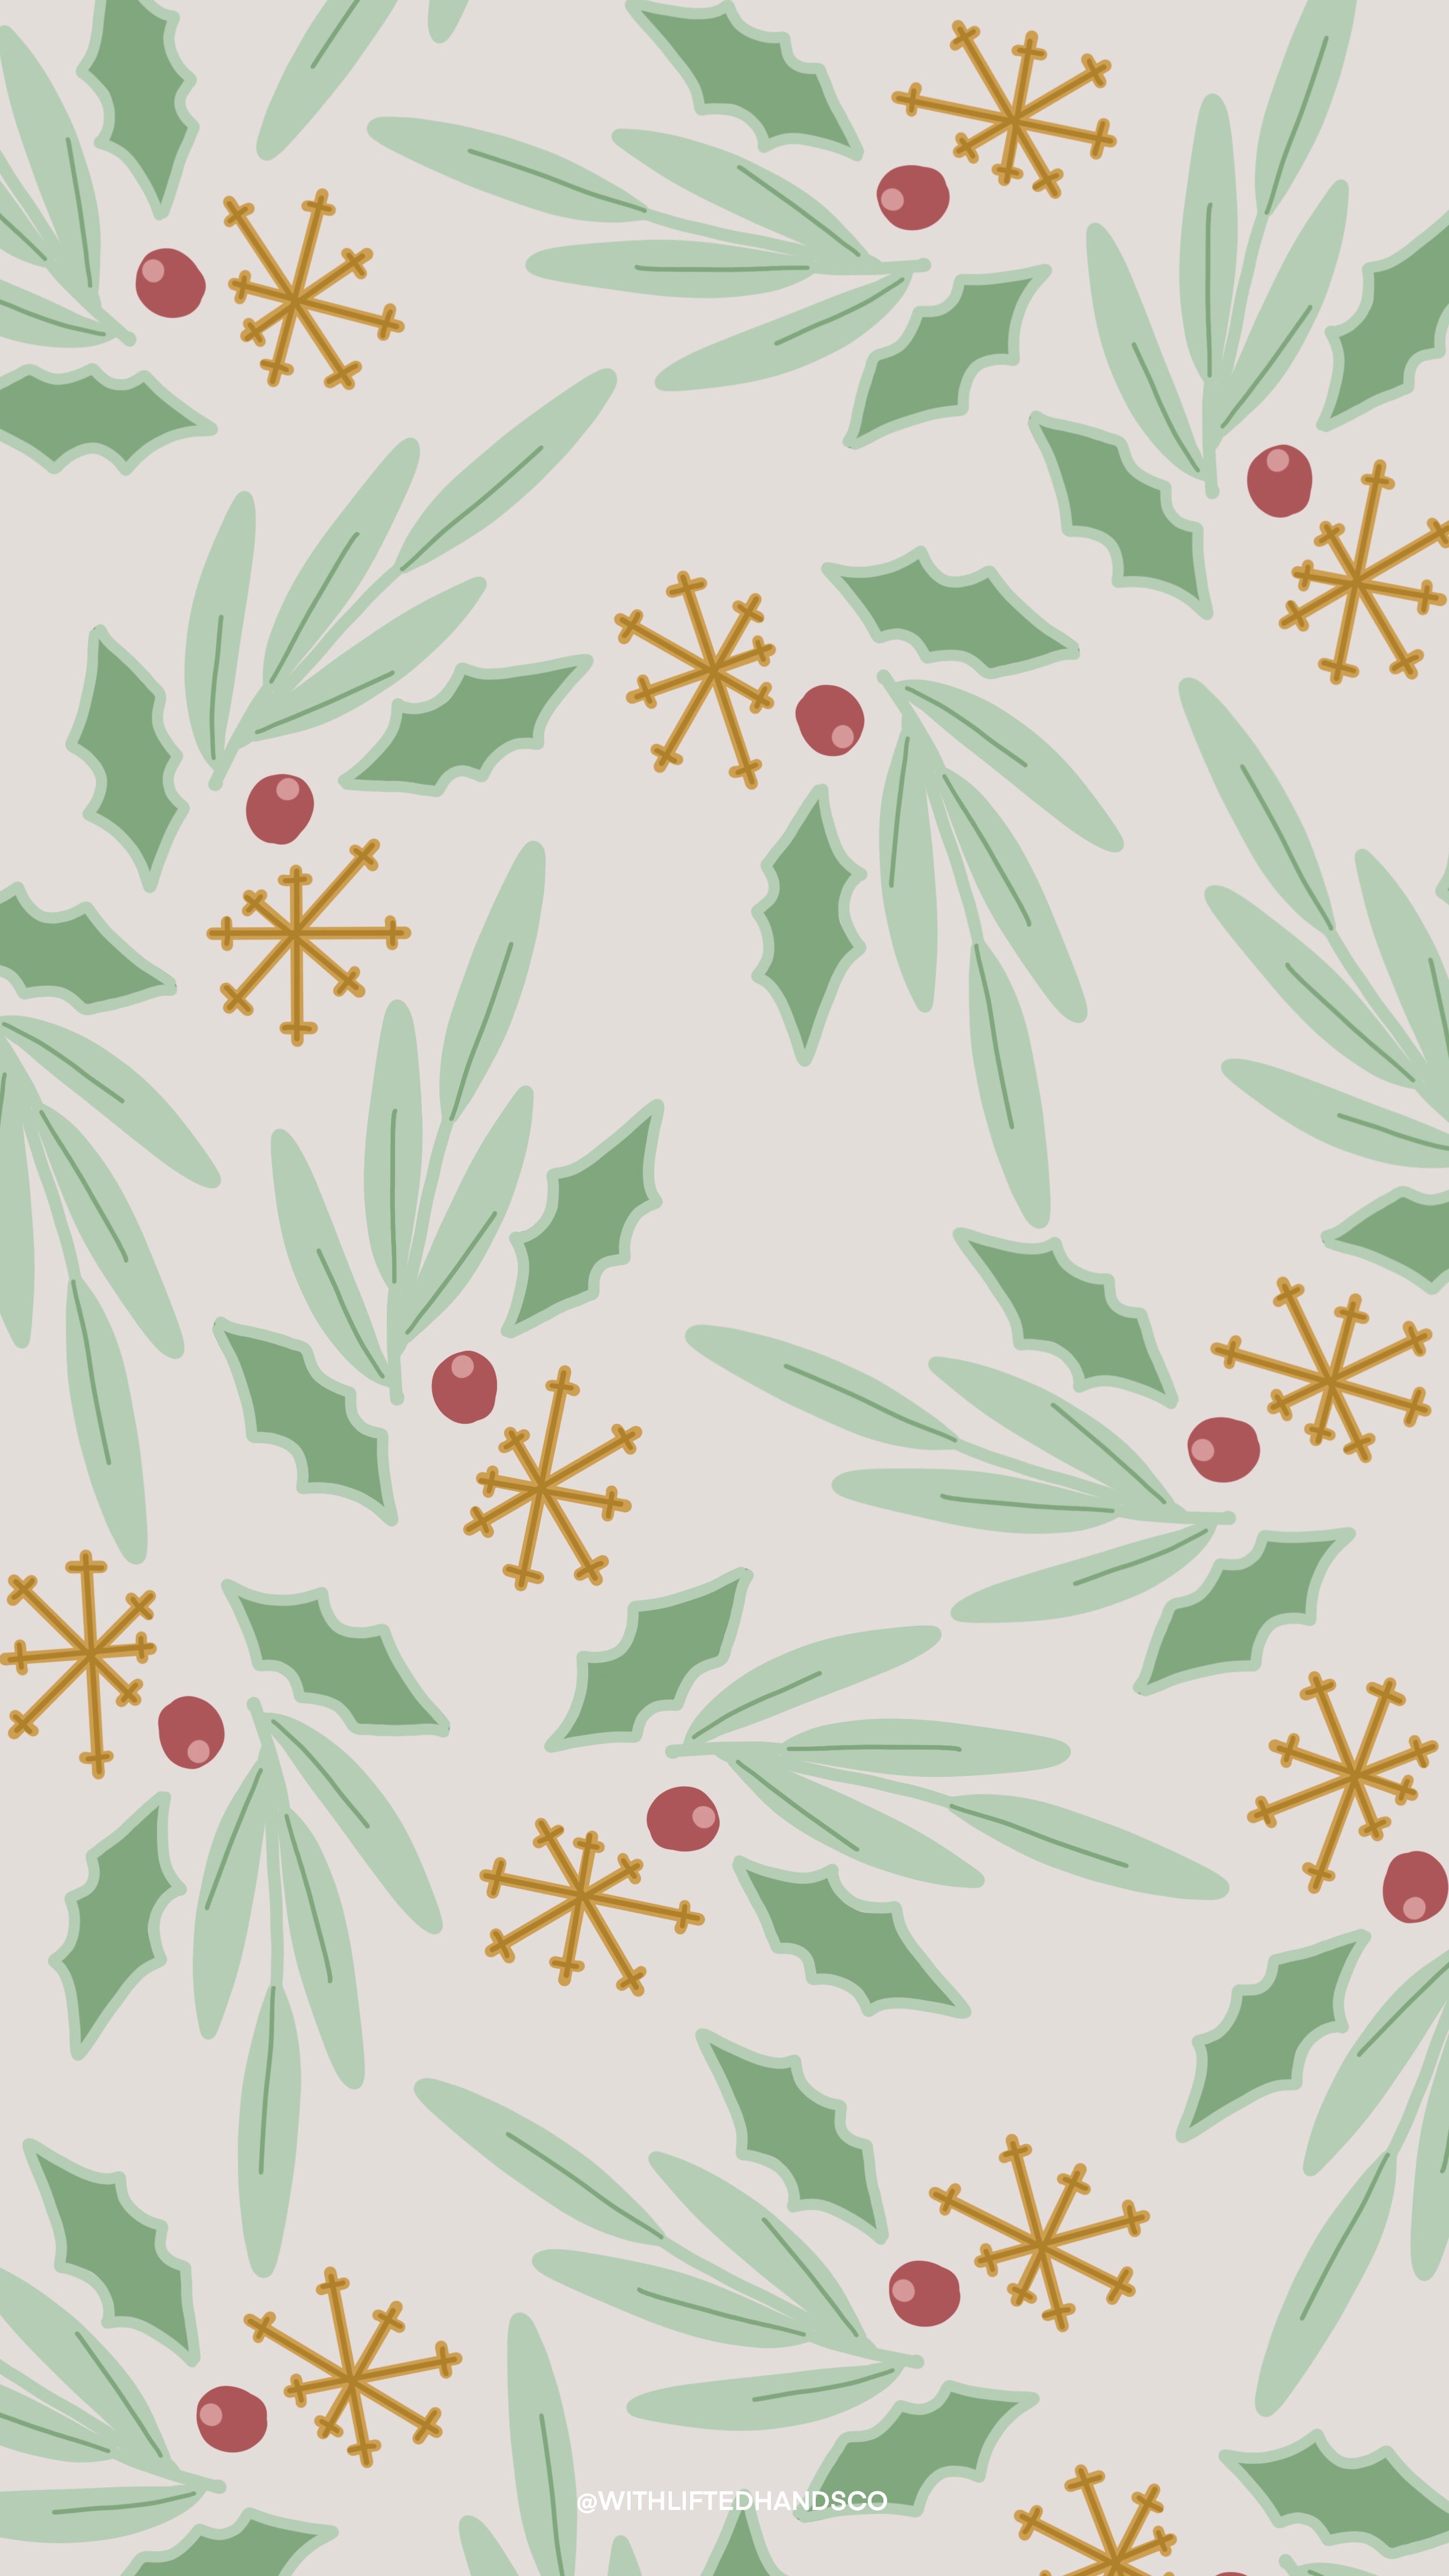 Mistletoe Christmas illustration